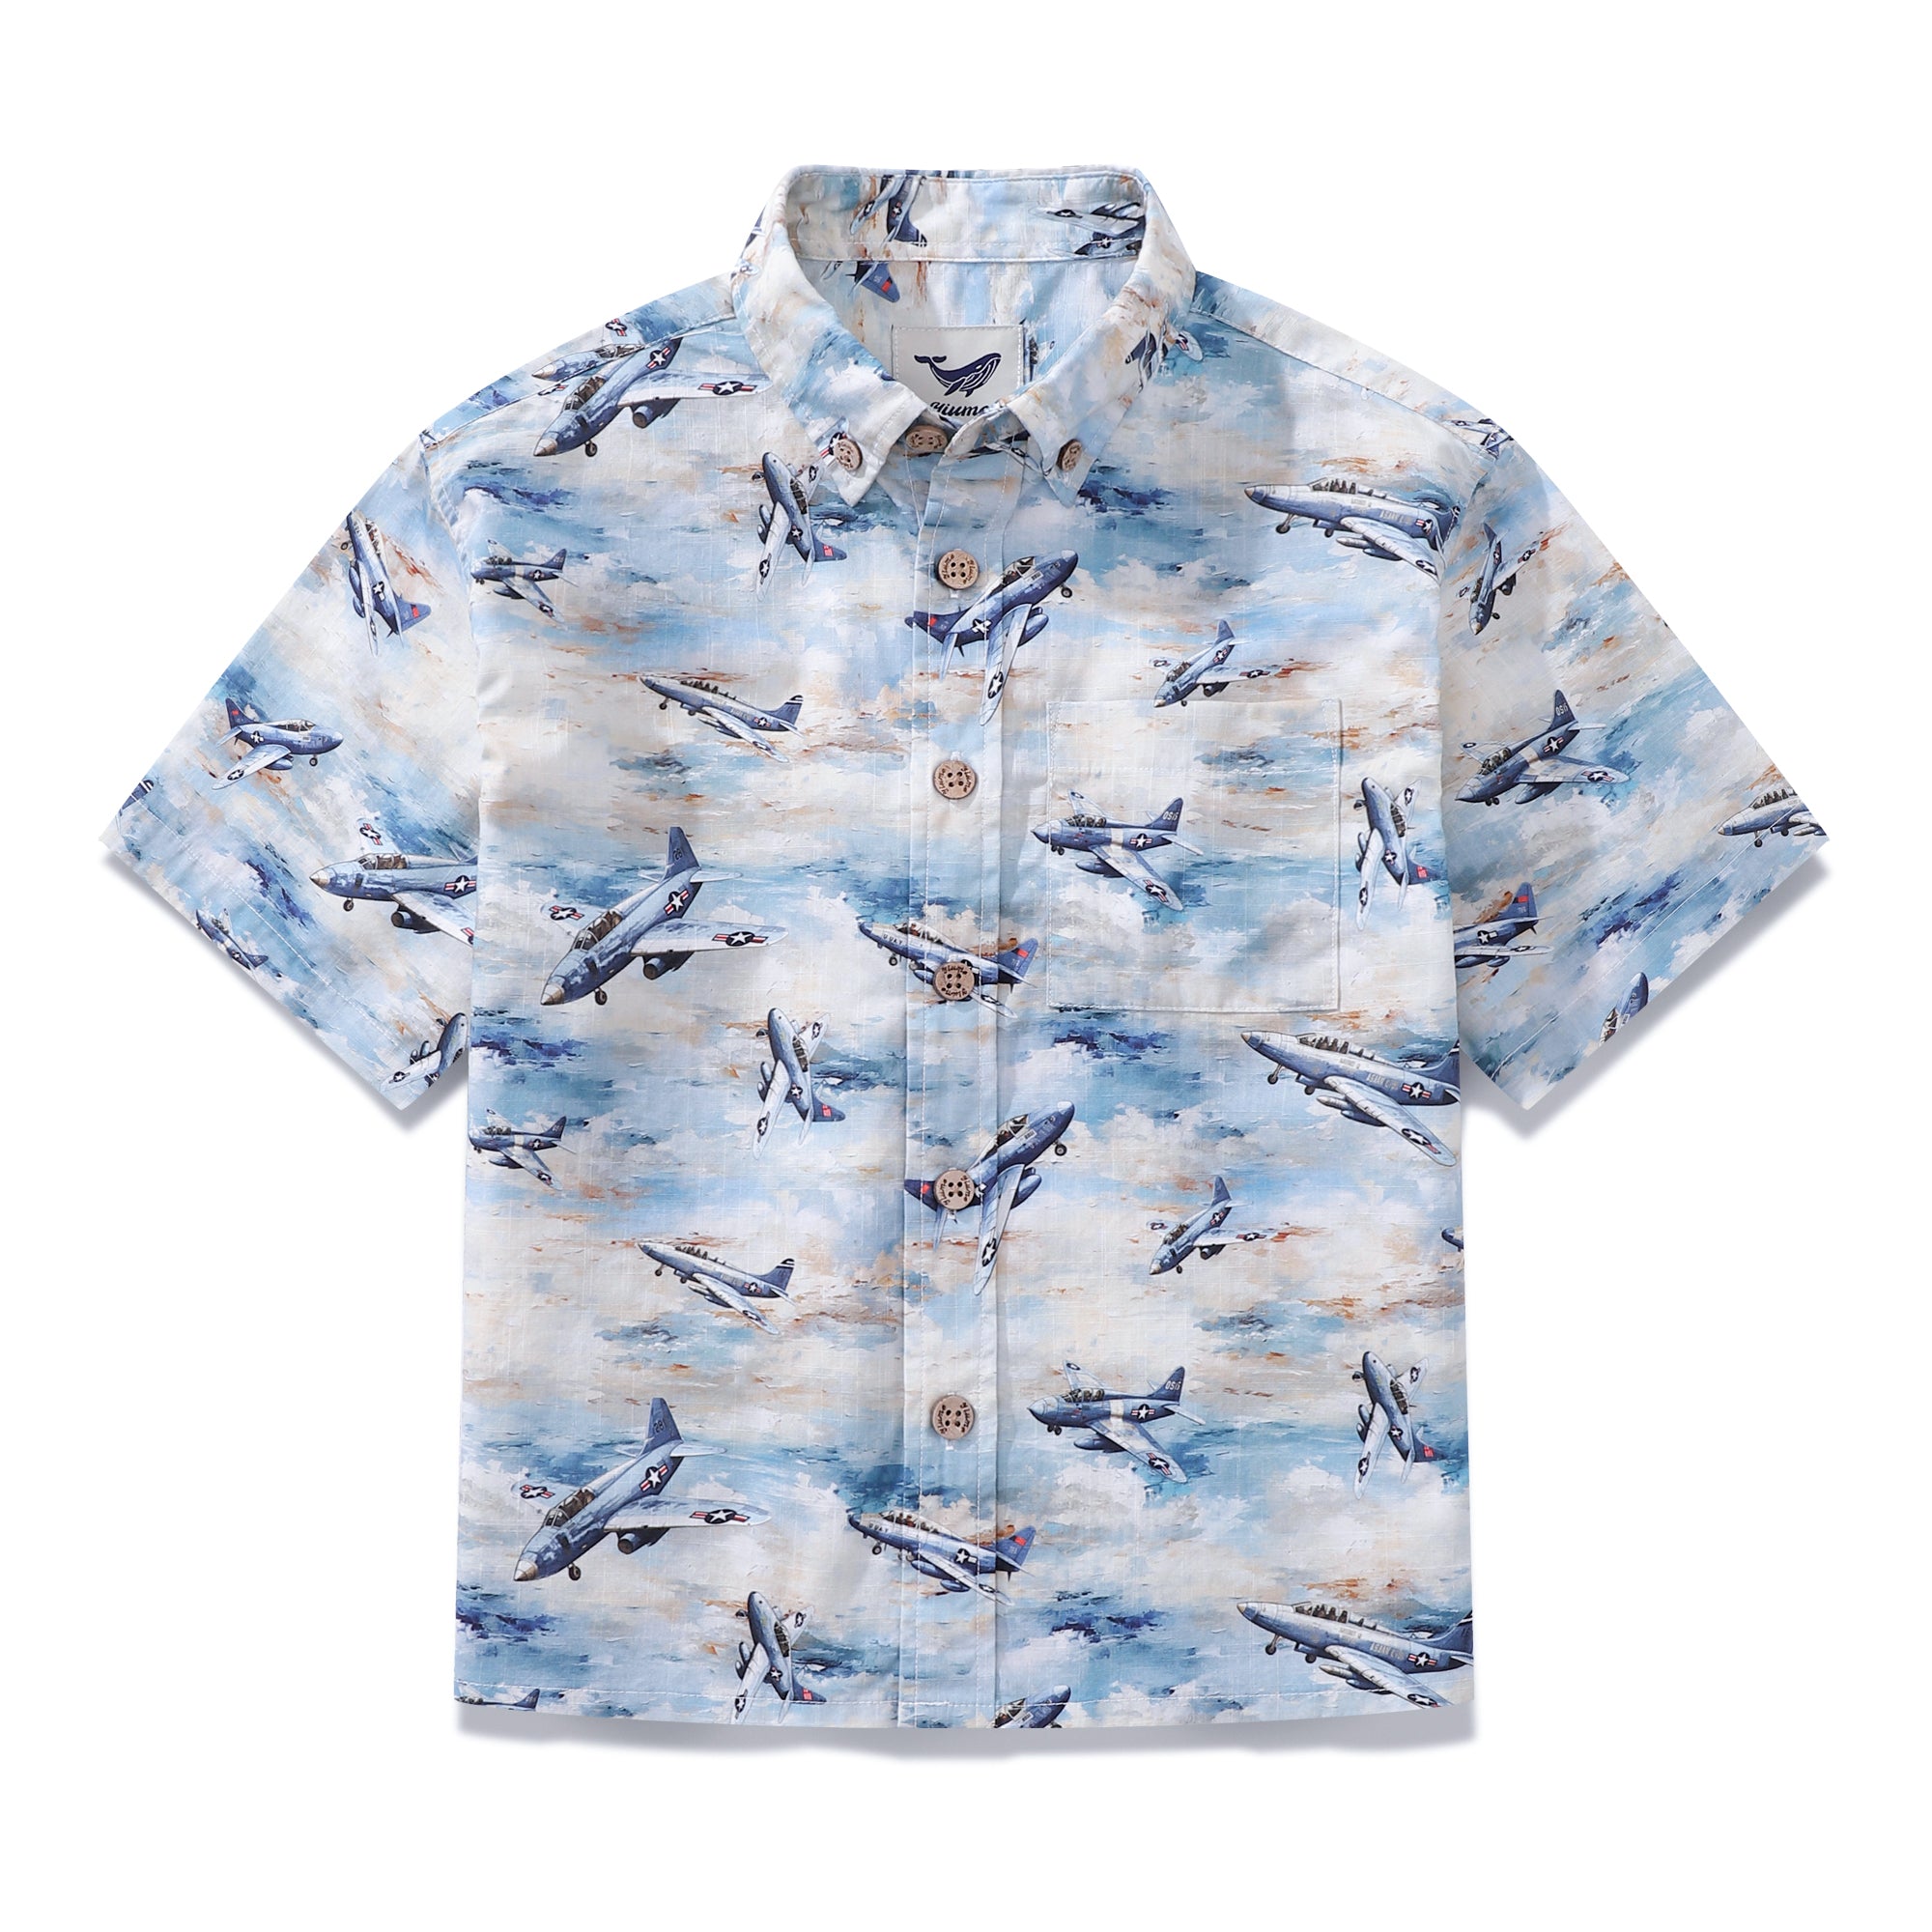 Children's Hawaiian Shirt Sky's the Limit Print Cotton Button-down Short Sleeve